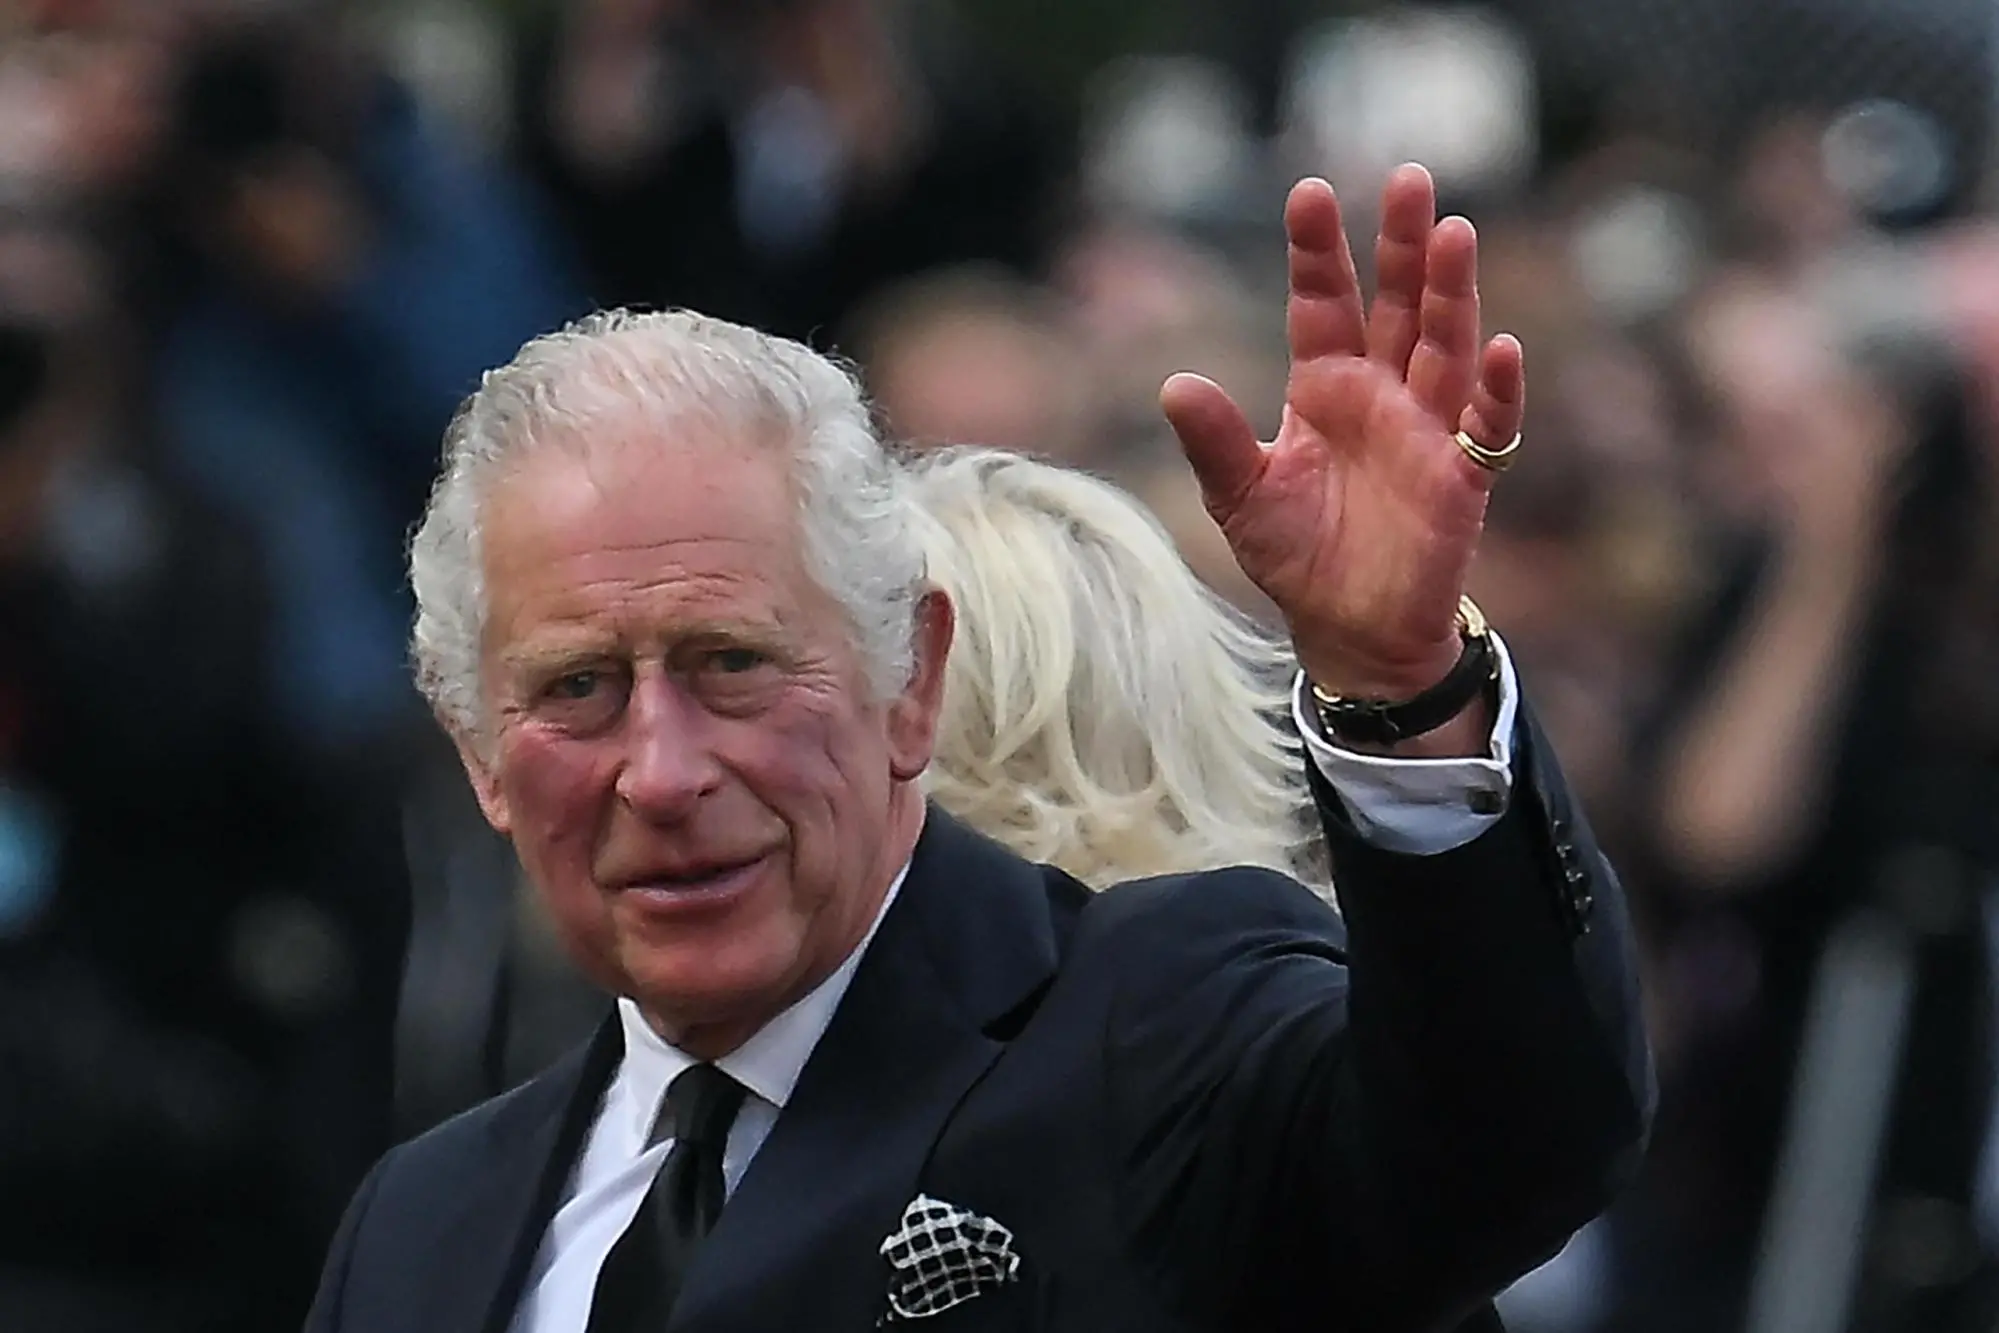 Carlo III è stato proclamato formalmente re negli appartamenti di St James, nel complesso di Buckingham Palace